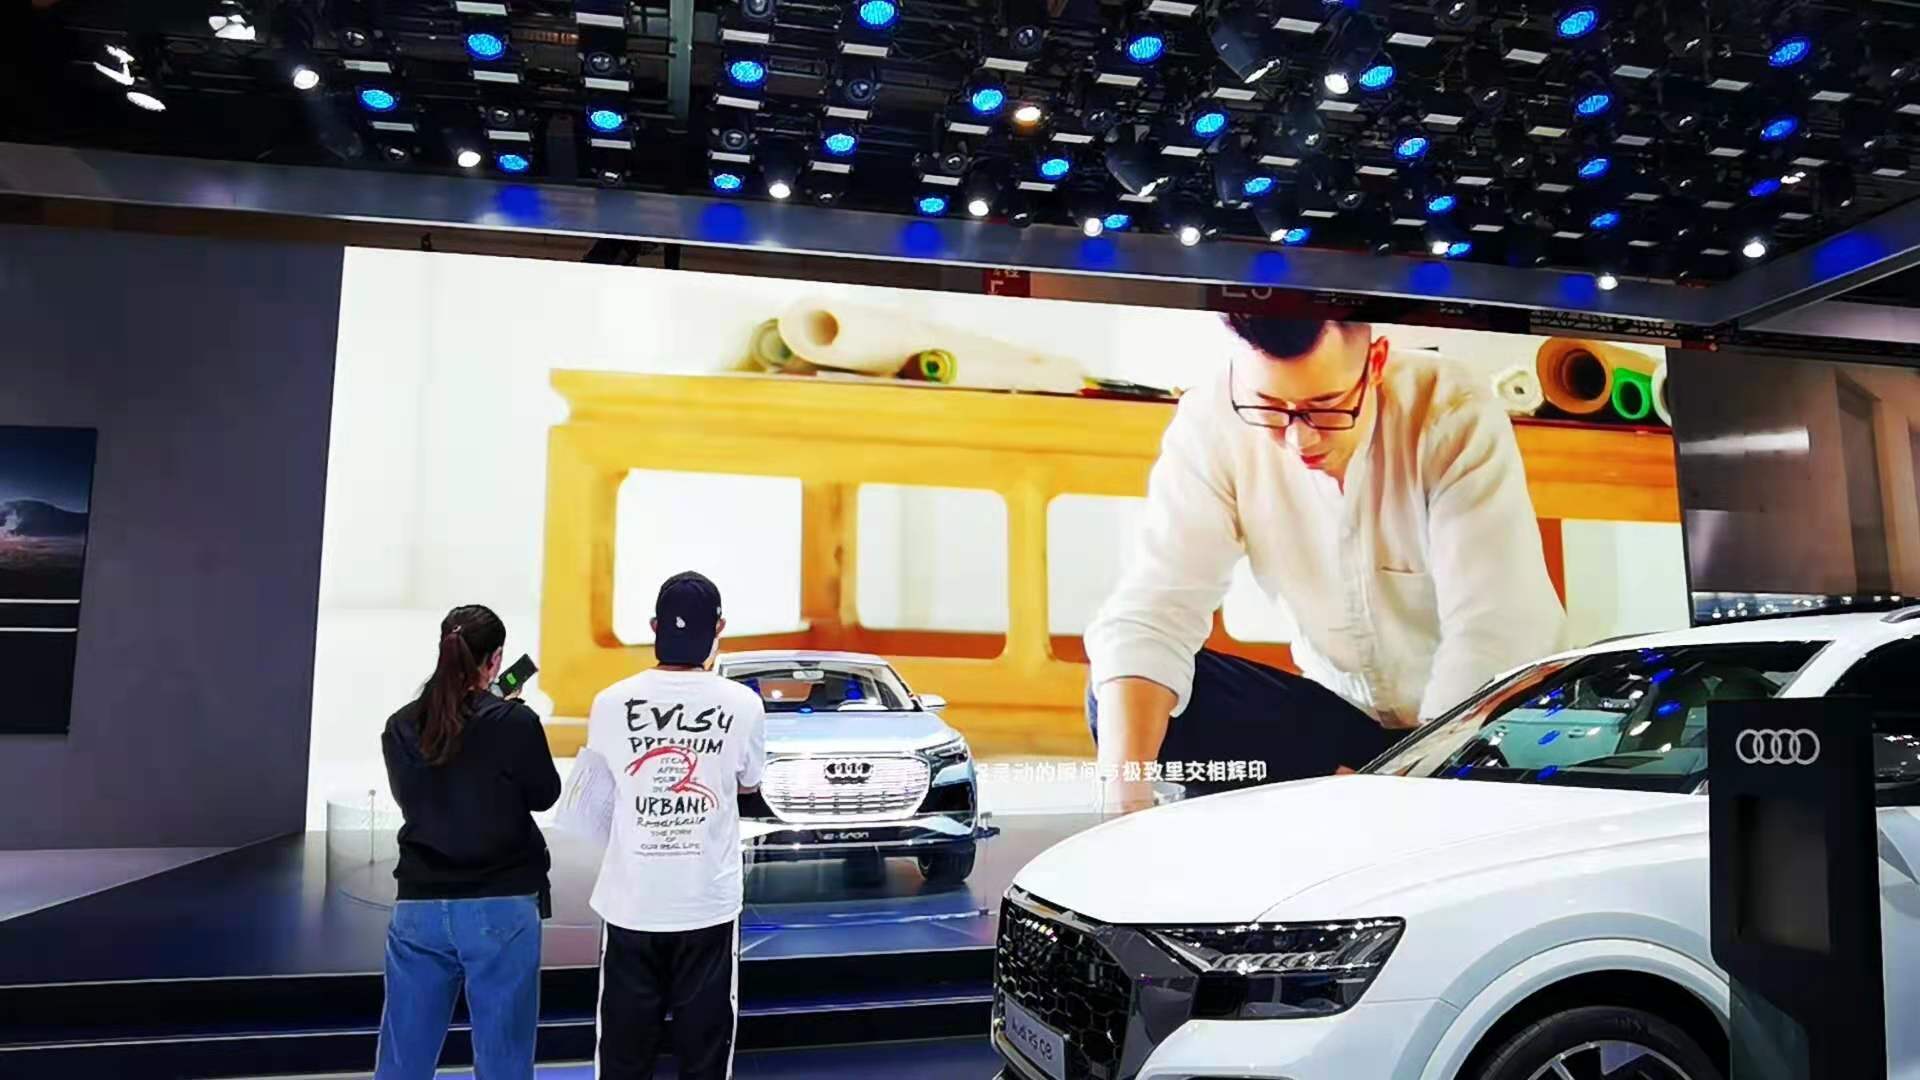 奥迪新车发布会邀请欧尼森世界纪录保持者刘通进行折纸展示